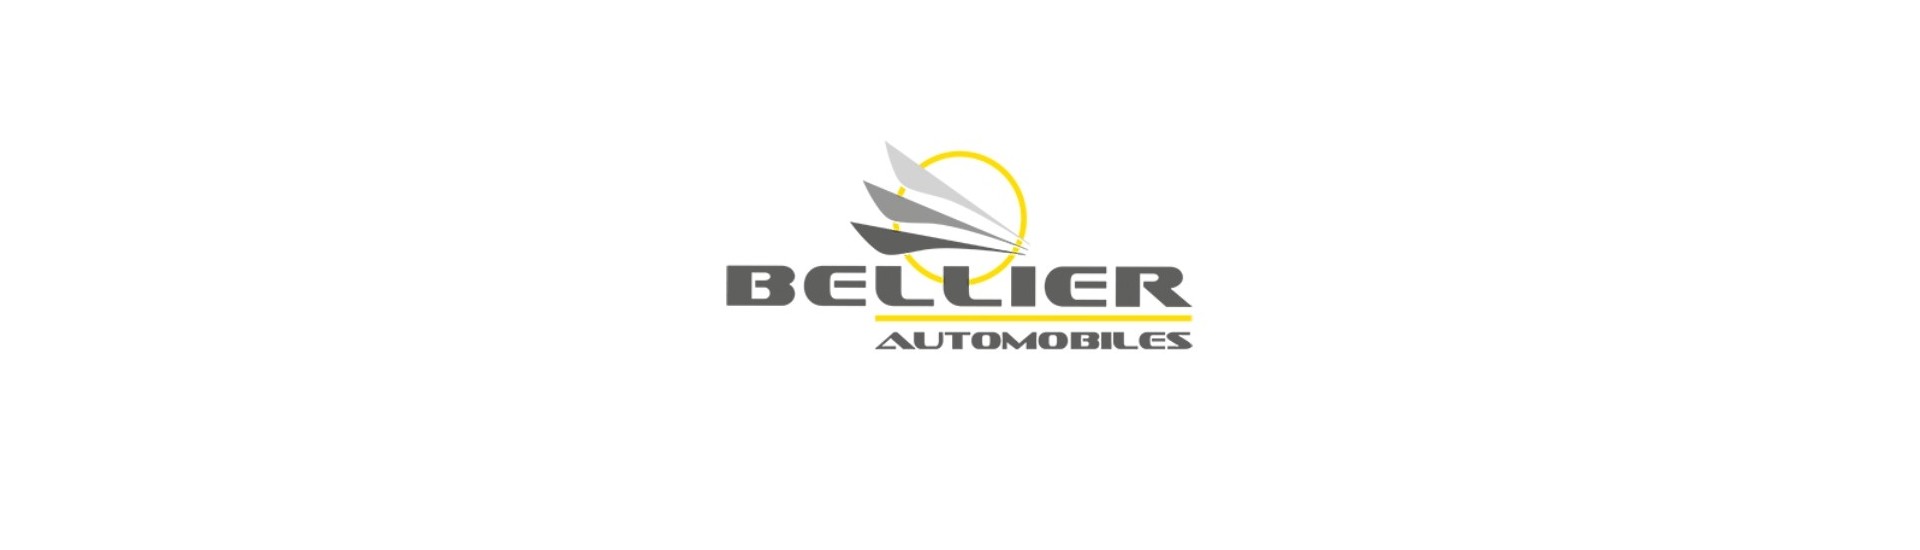 Consolle centrale al miglior prezzo per un'auto senza patente Bellier